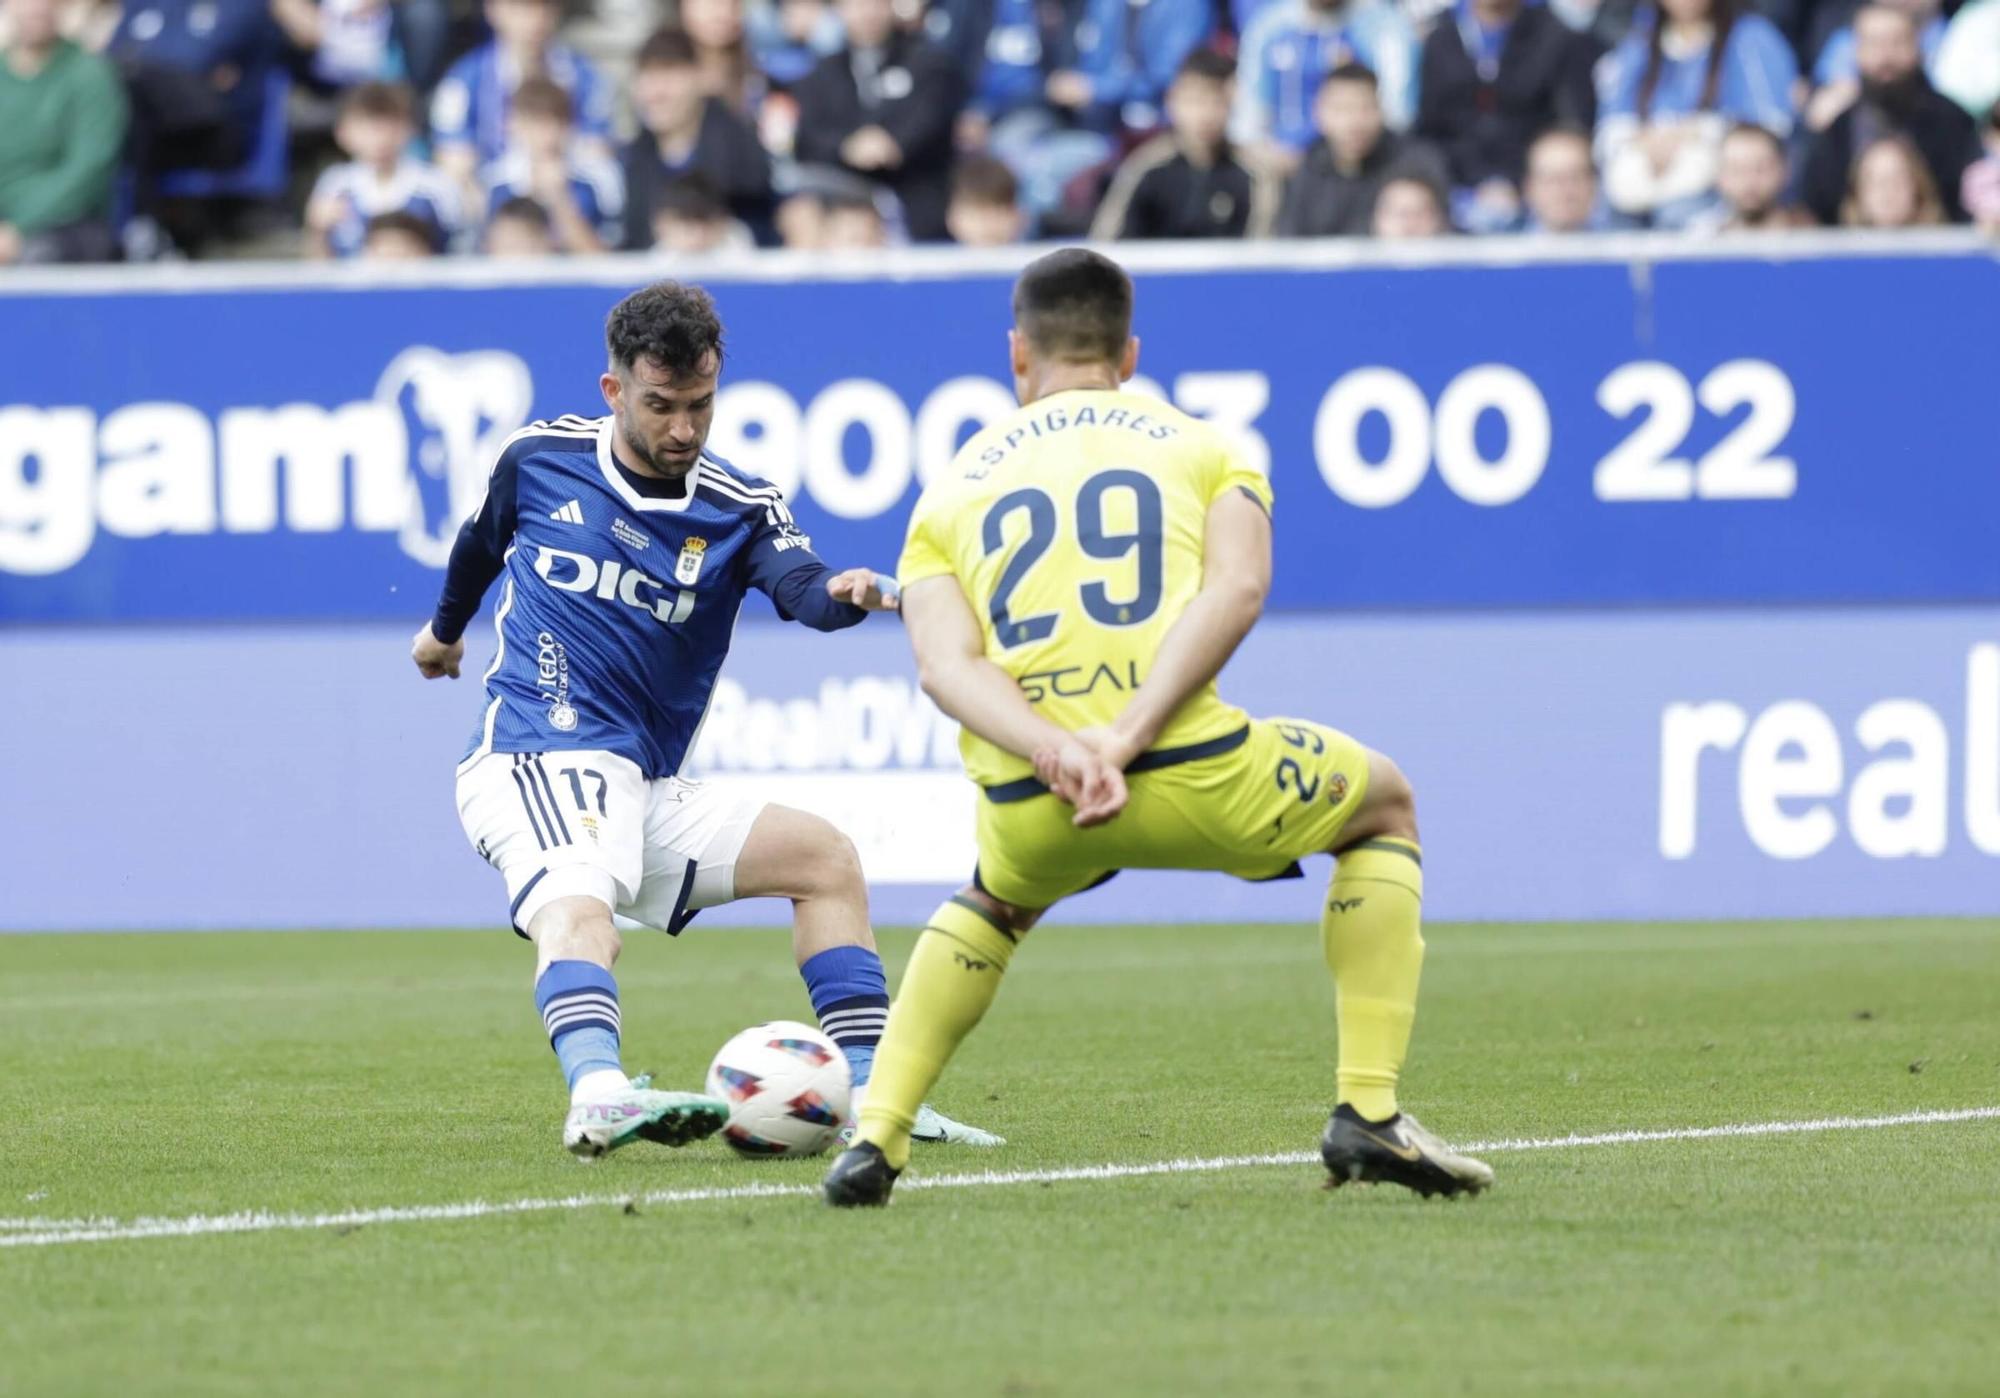 Alemão pega más duro y el Oviedo vuelve a ganar: 2-1